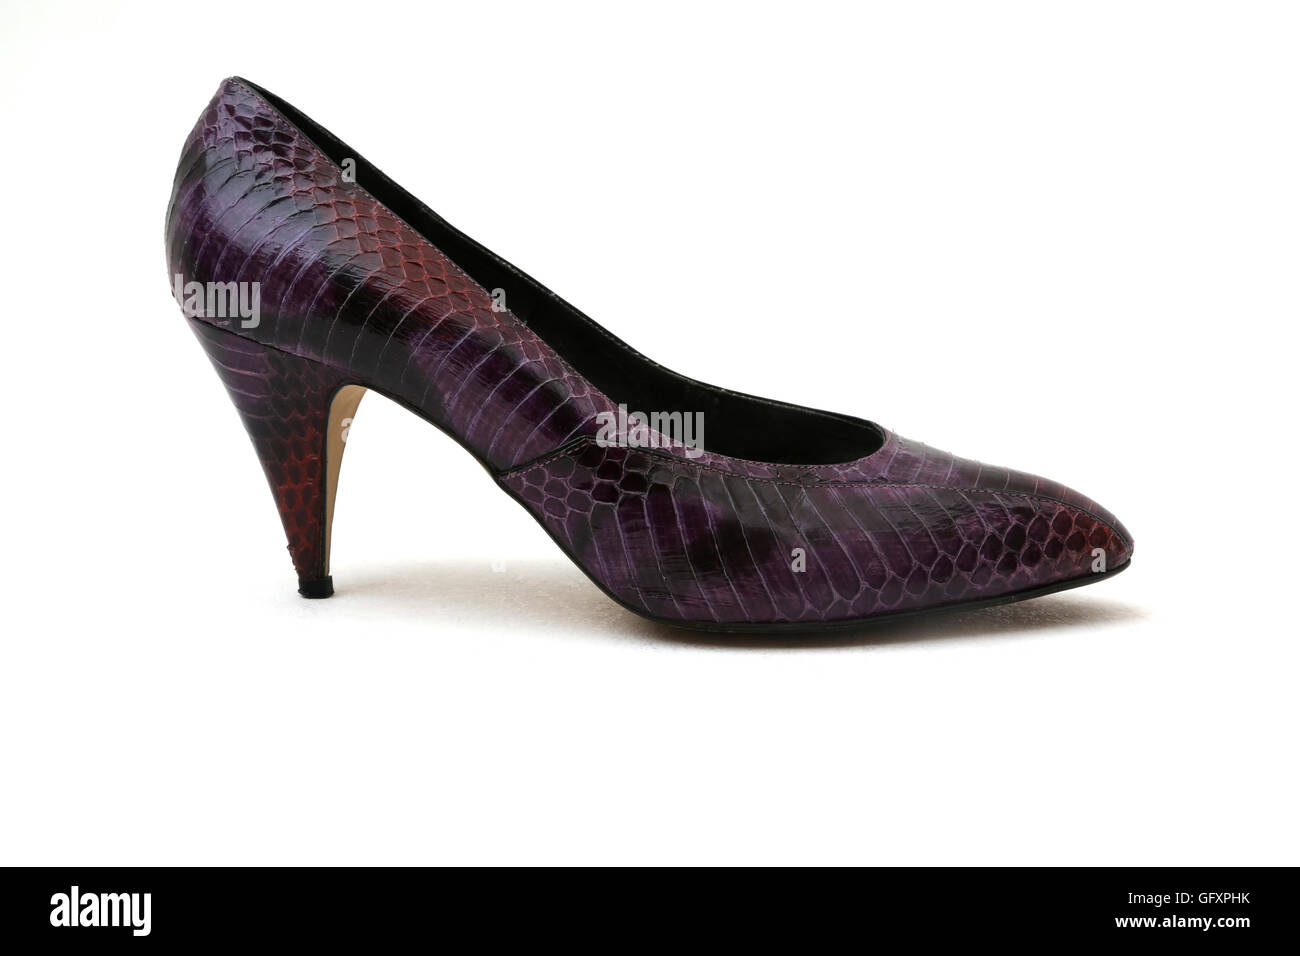 J Renee' Teint Violet Chaussure talon aiguille en peau Banque D'Images